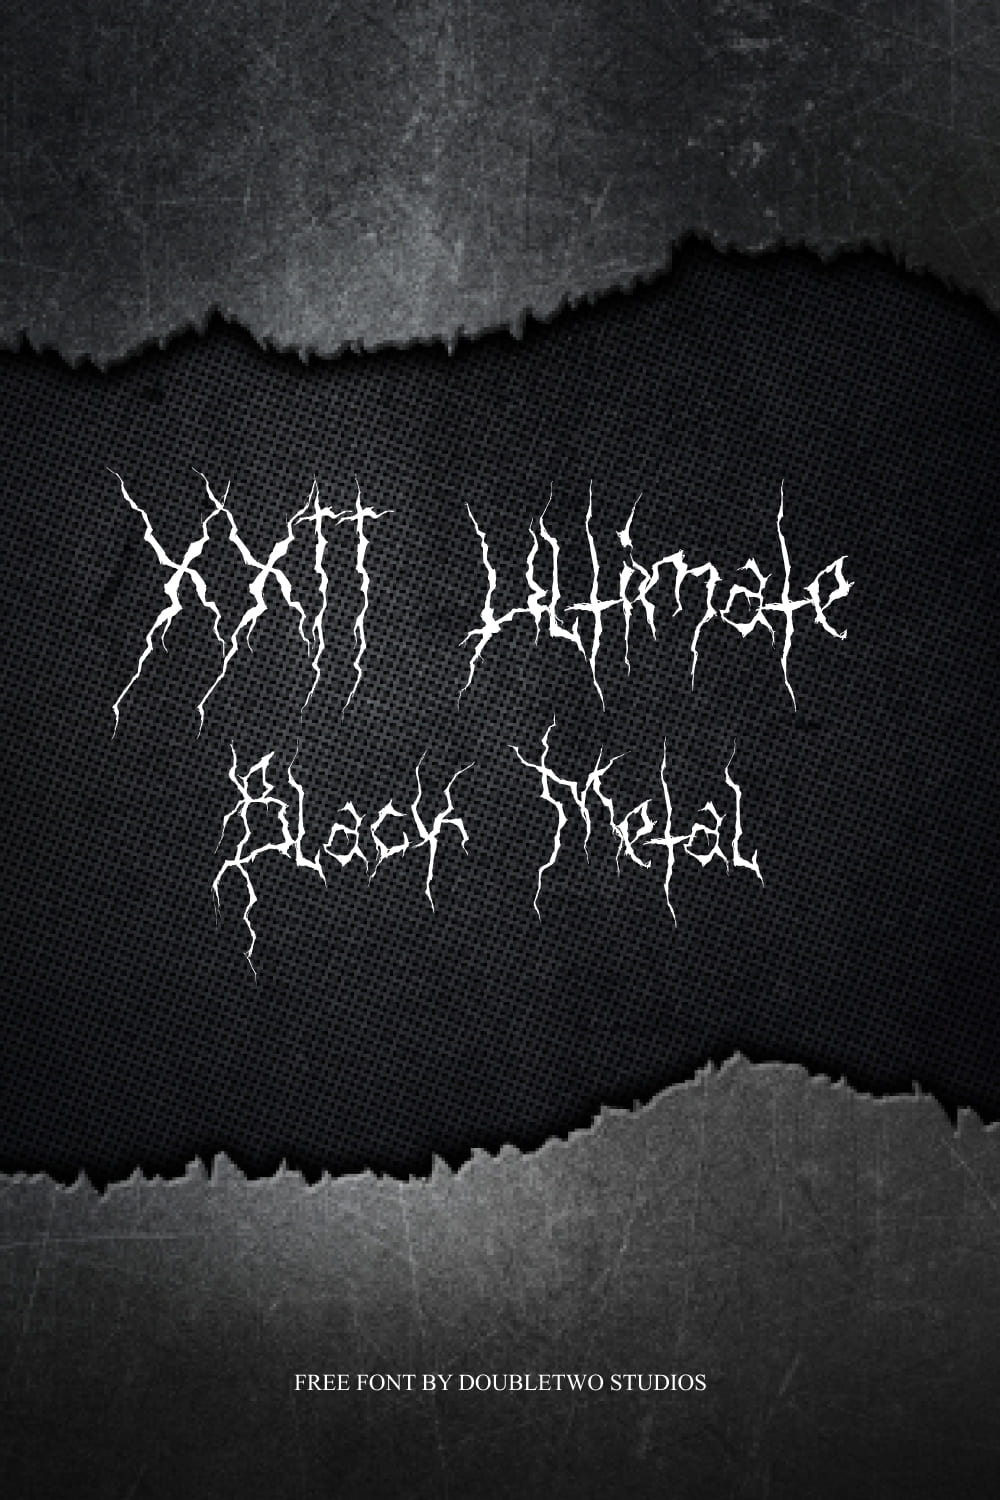 Free Ultimate Black Metal Font MasterBundles Pinterest Collage Image.